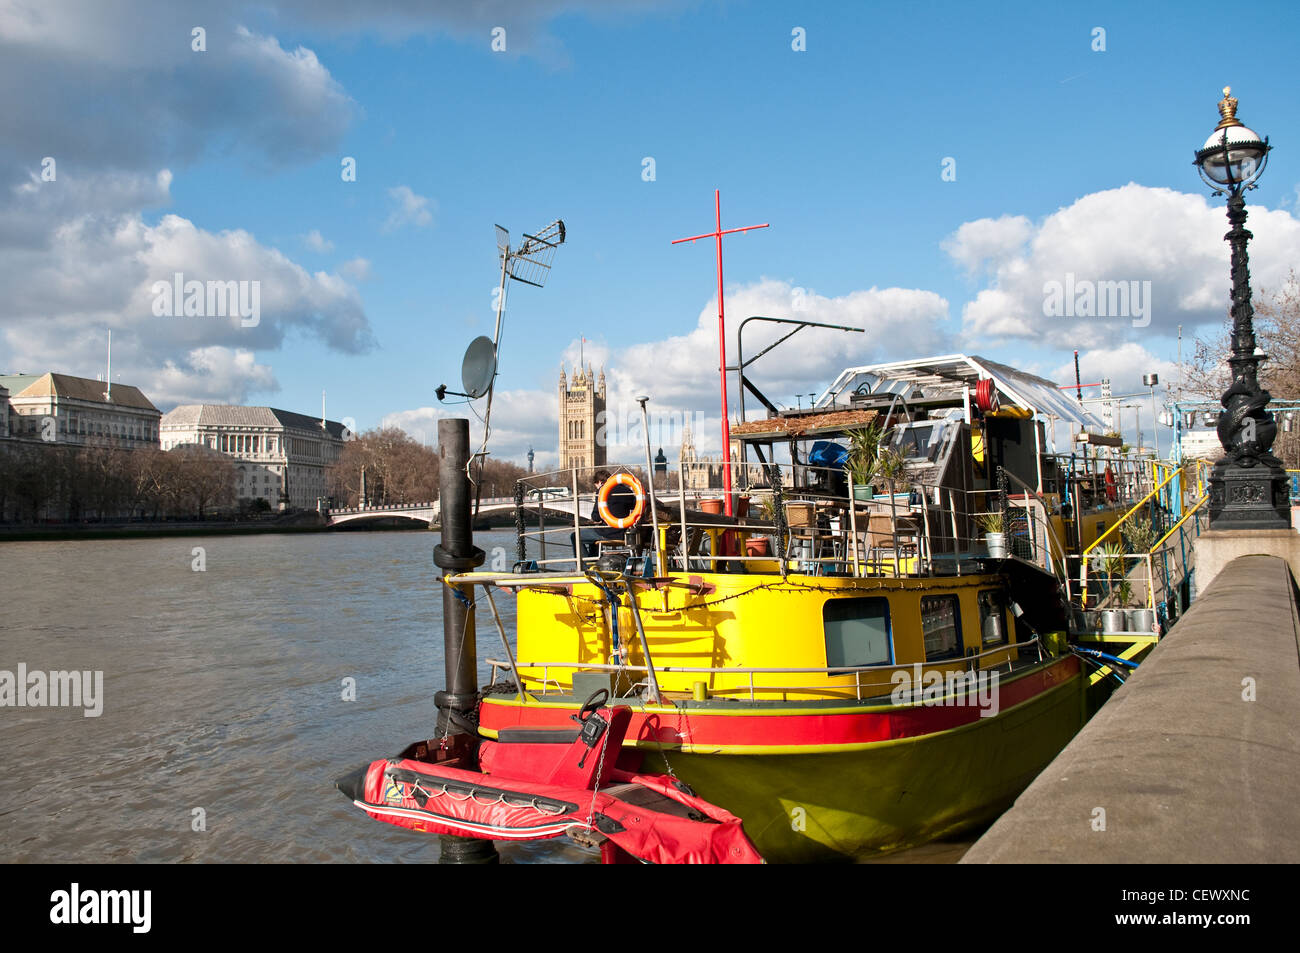 Boat restaurant on the Thames, Albert Embankment, Lambeth, London, UK Stock Photo